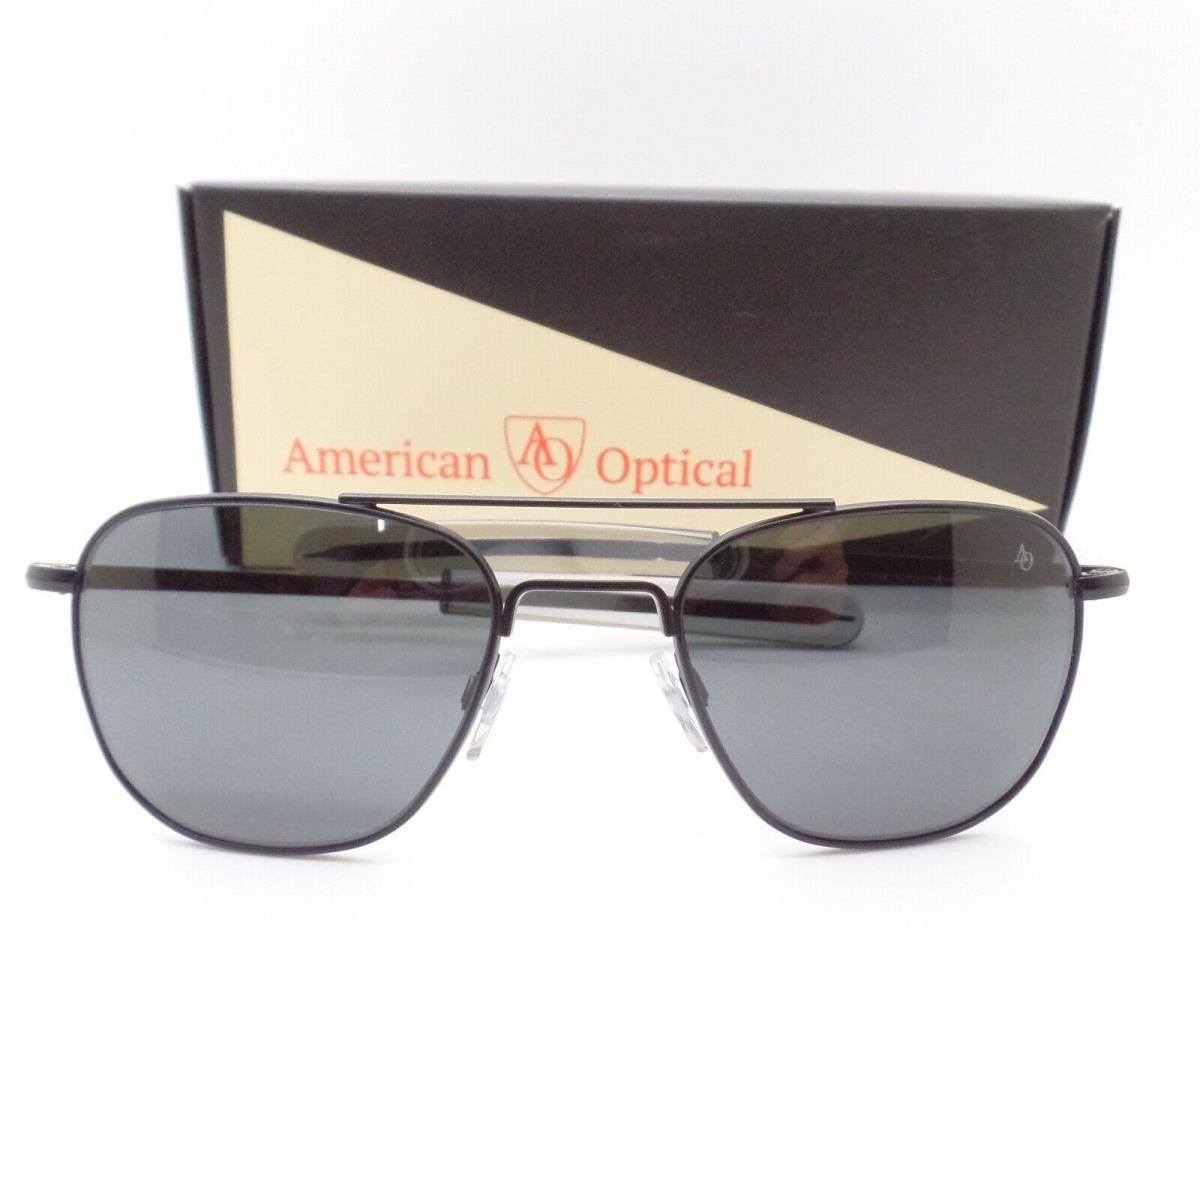 American Optical Original Pilot AO American Optical Pilot Black Grey Lens Option Sunglasses - Frame: Black, Lens: Grey